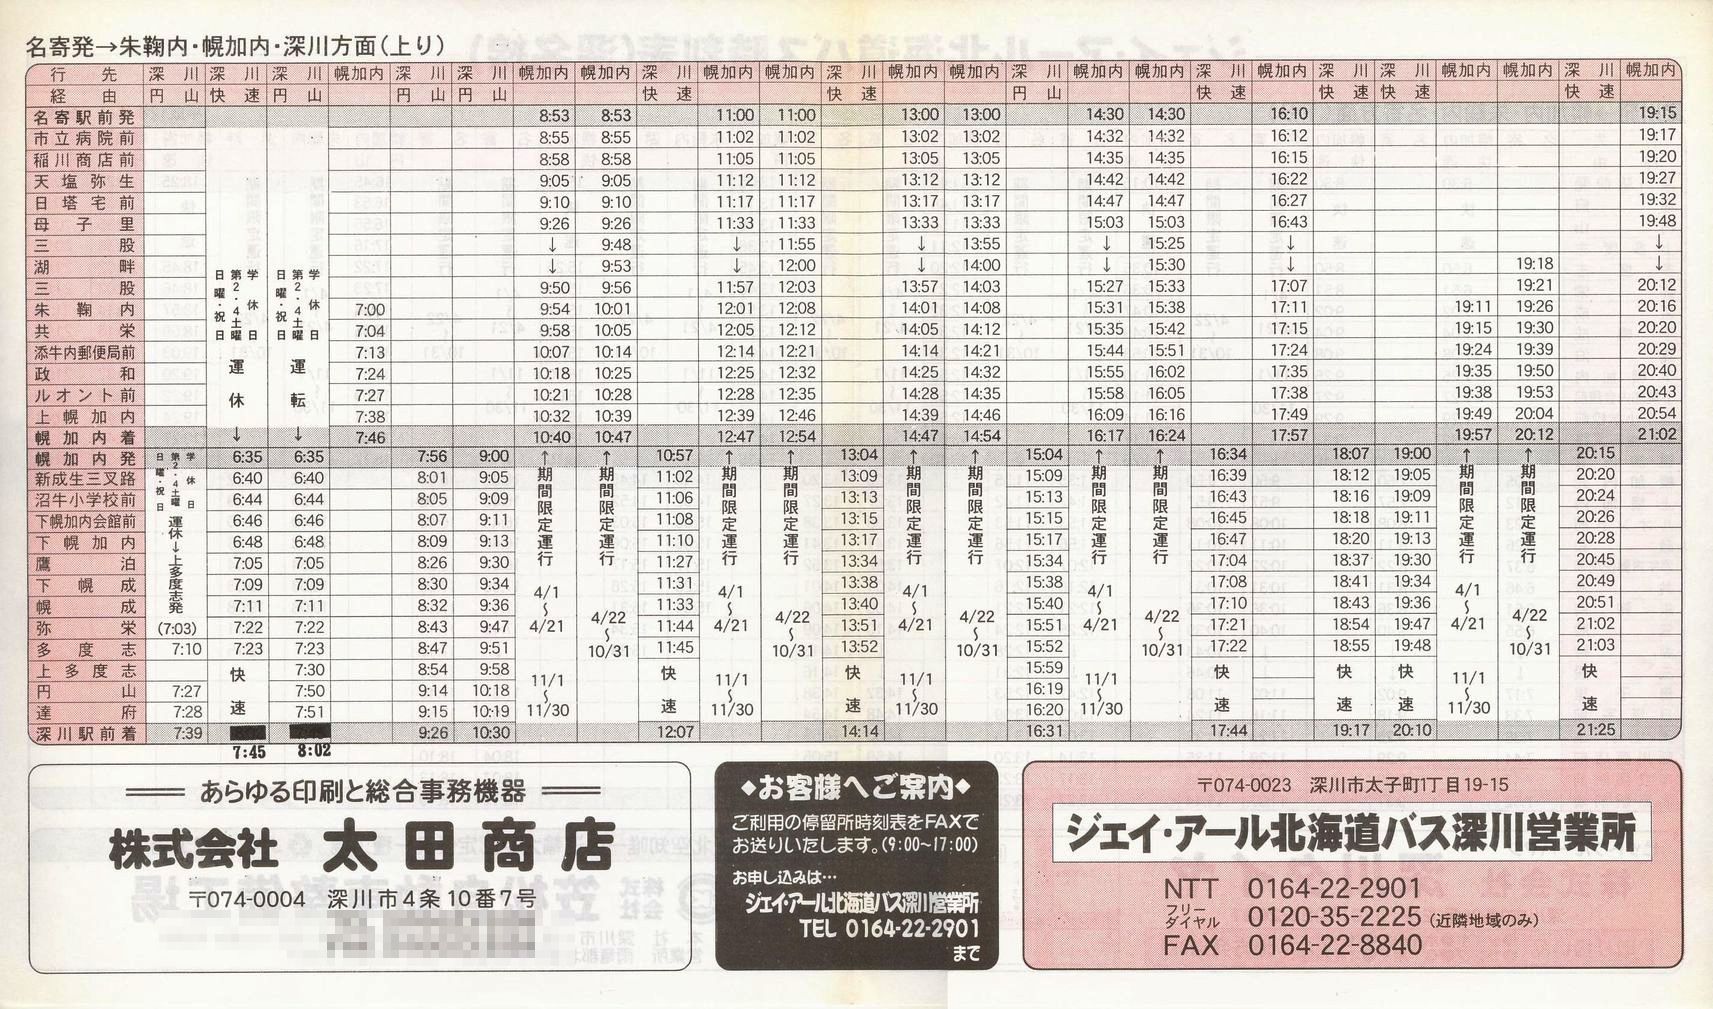 2000-04-01改正_ジェイ・アール北海道バス_深名線時刻表裏面